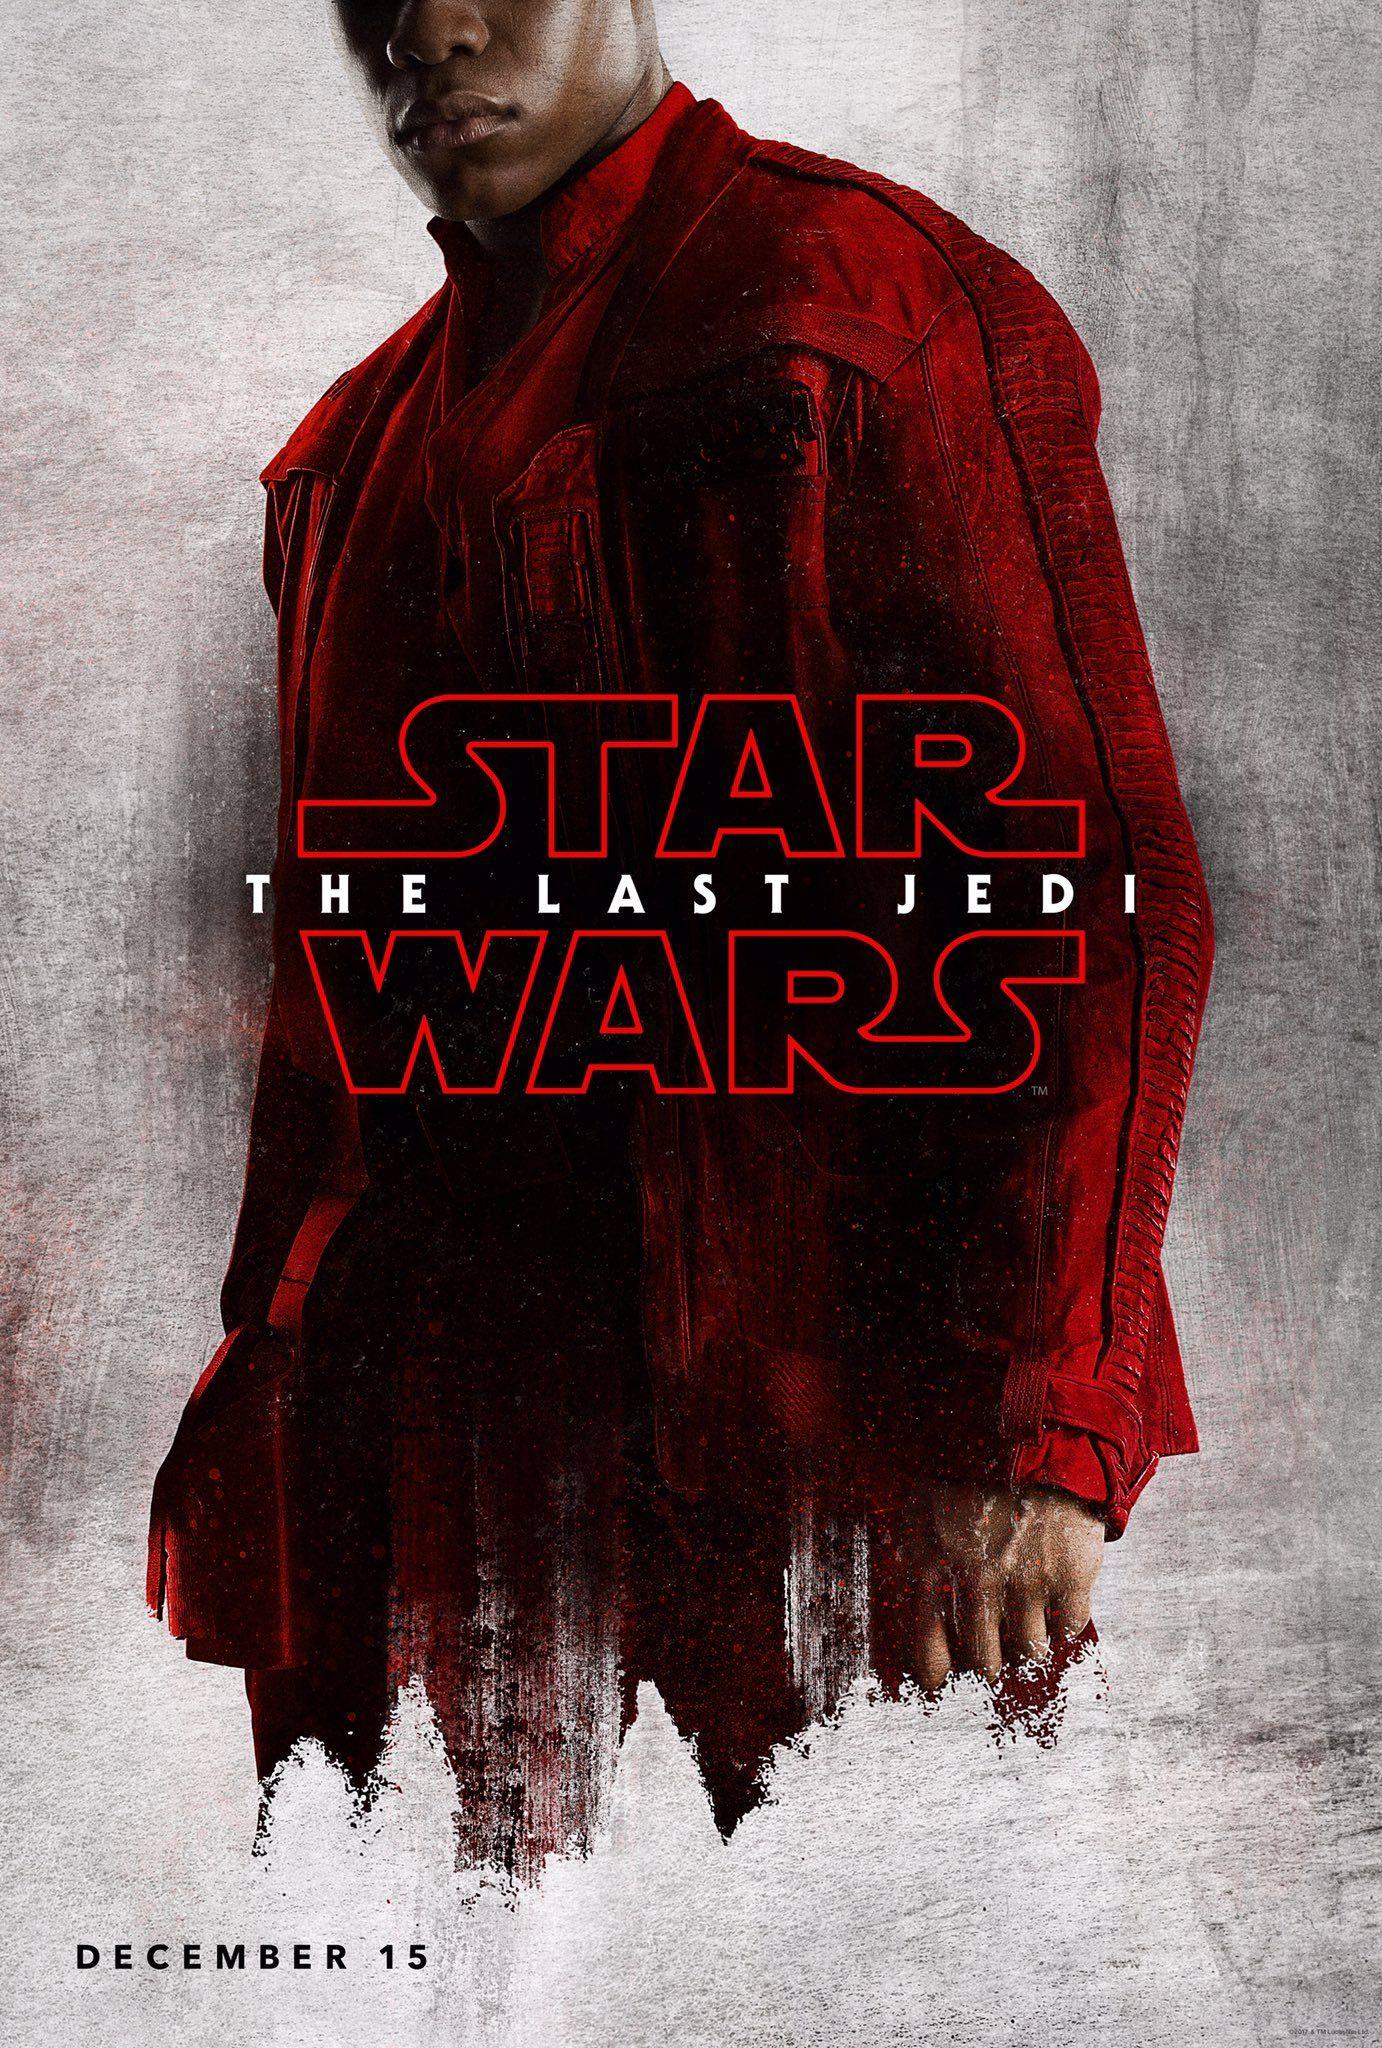 Star Wars: The Last Jedi 2017 Movie Posters